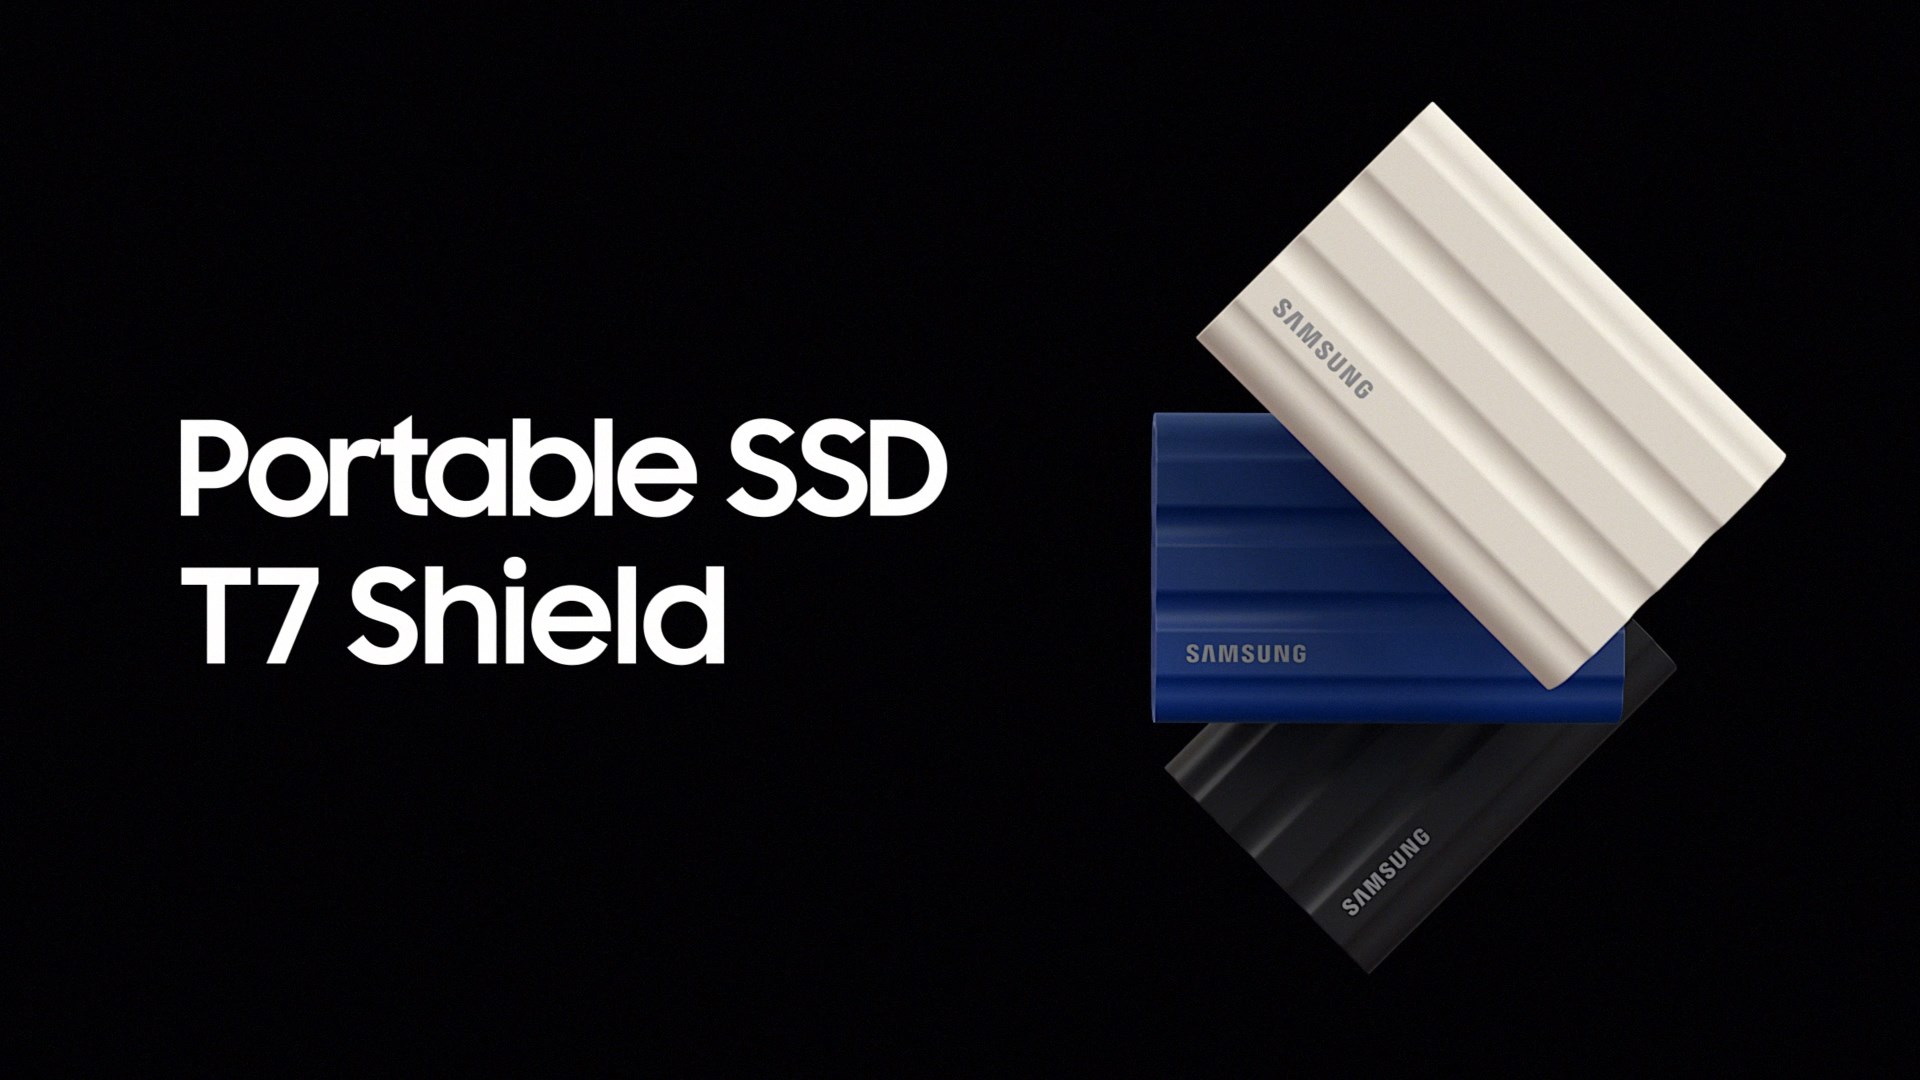 Samsung zaprezentował przenośny dysk SSD T7 Shield – trwałość, szybkość i wydajność w pracy kreatywnej i w terenie